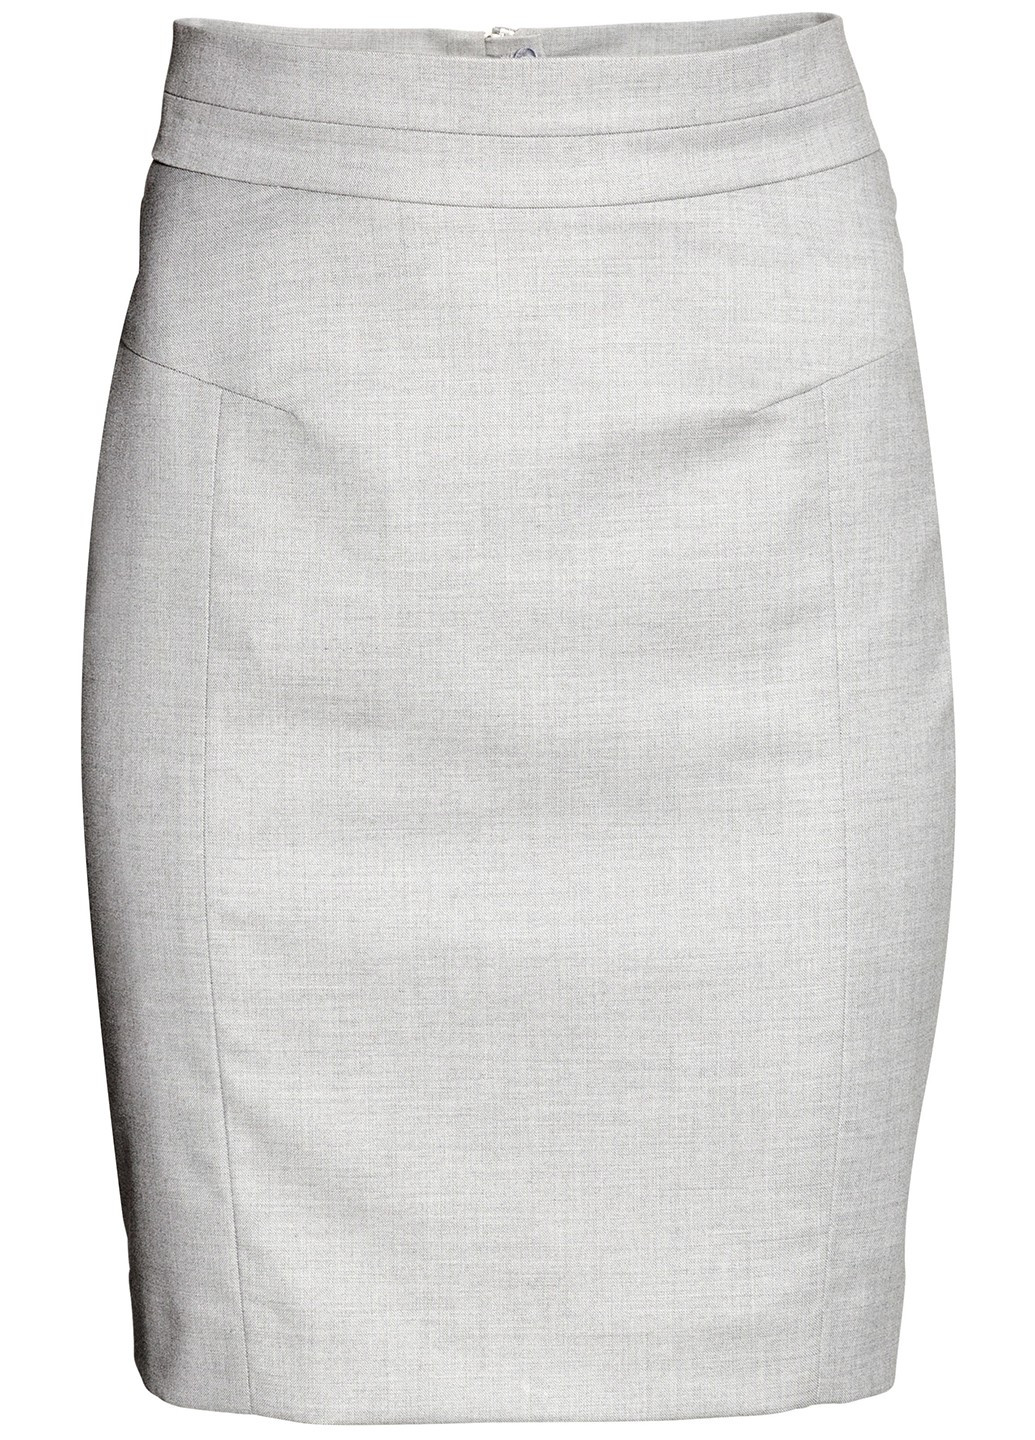 Светло-серая офисная юбка H&M карандаш